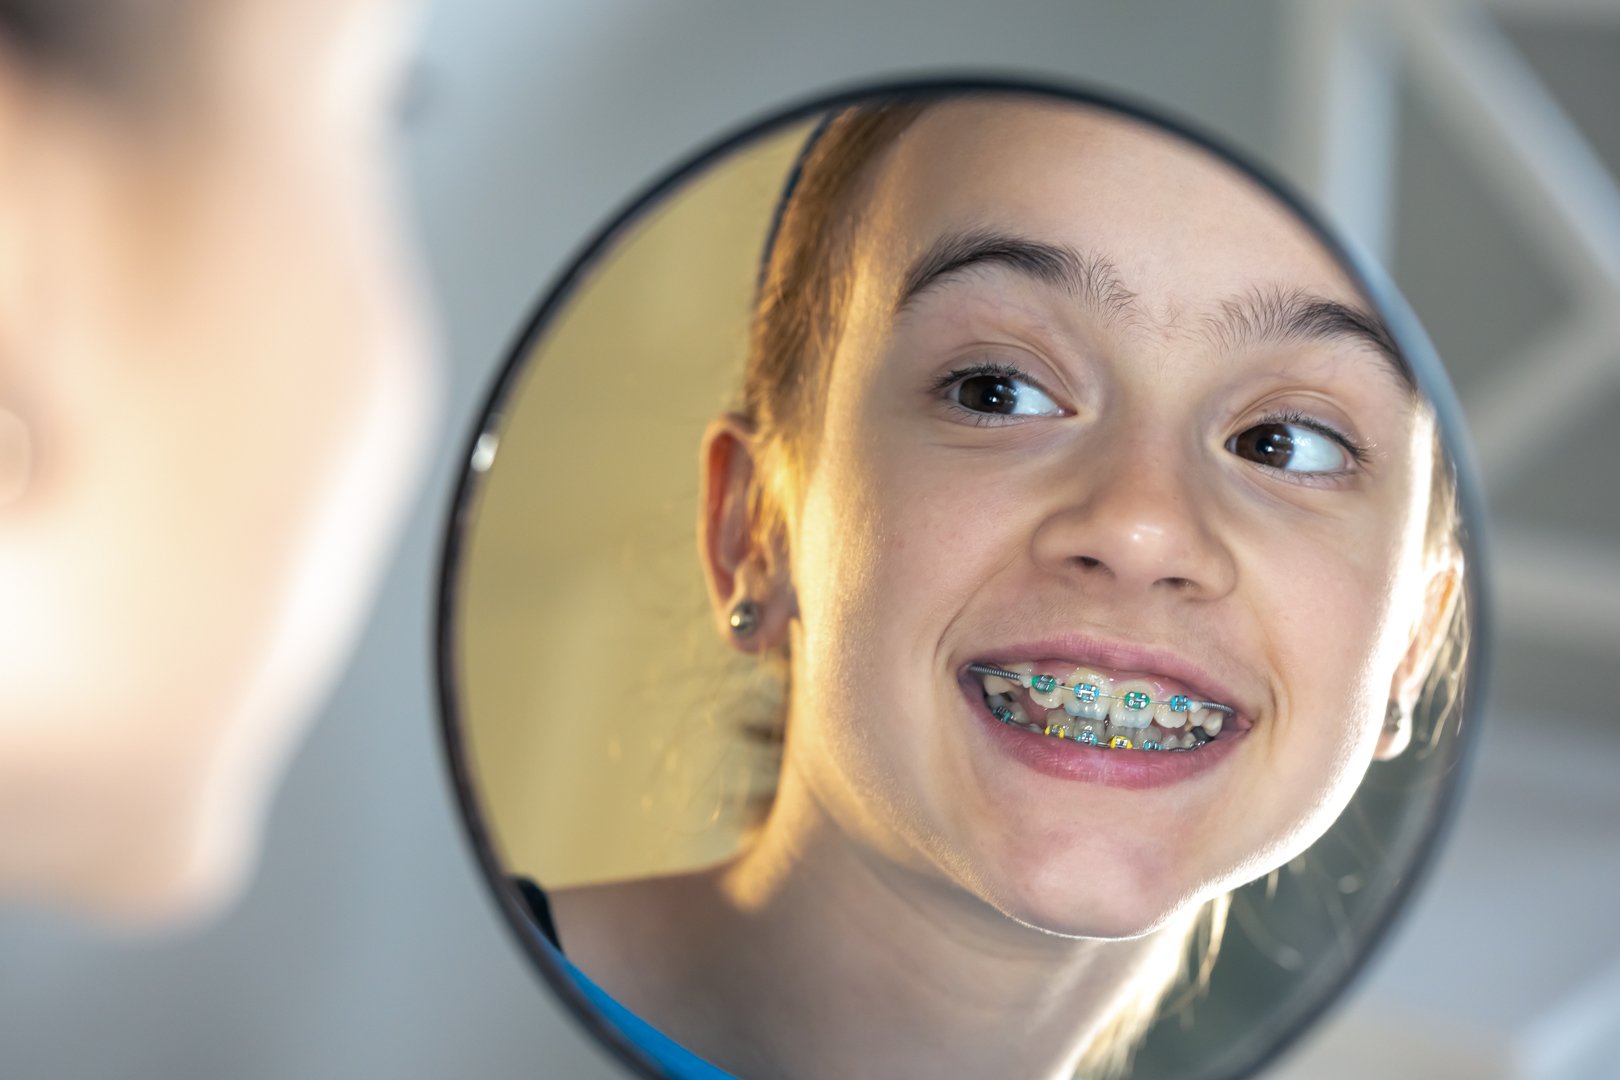 Știați că afecțiunile ortodontice &icirc;ncep &icirc;ncă din copilărie, odată cu apariția dinților definitivi?

Beneficiile tratamentului ortodontic &icirc;nceput de timpuriu sunt numeroase, iată unele dintre ele:

🔸 corectarea problemelor dentare &